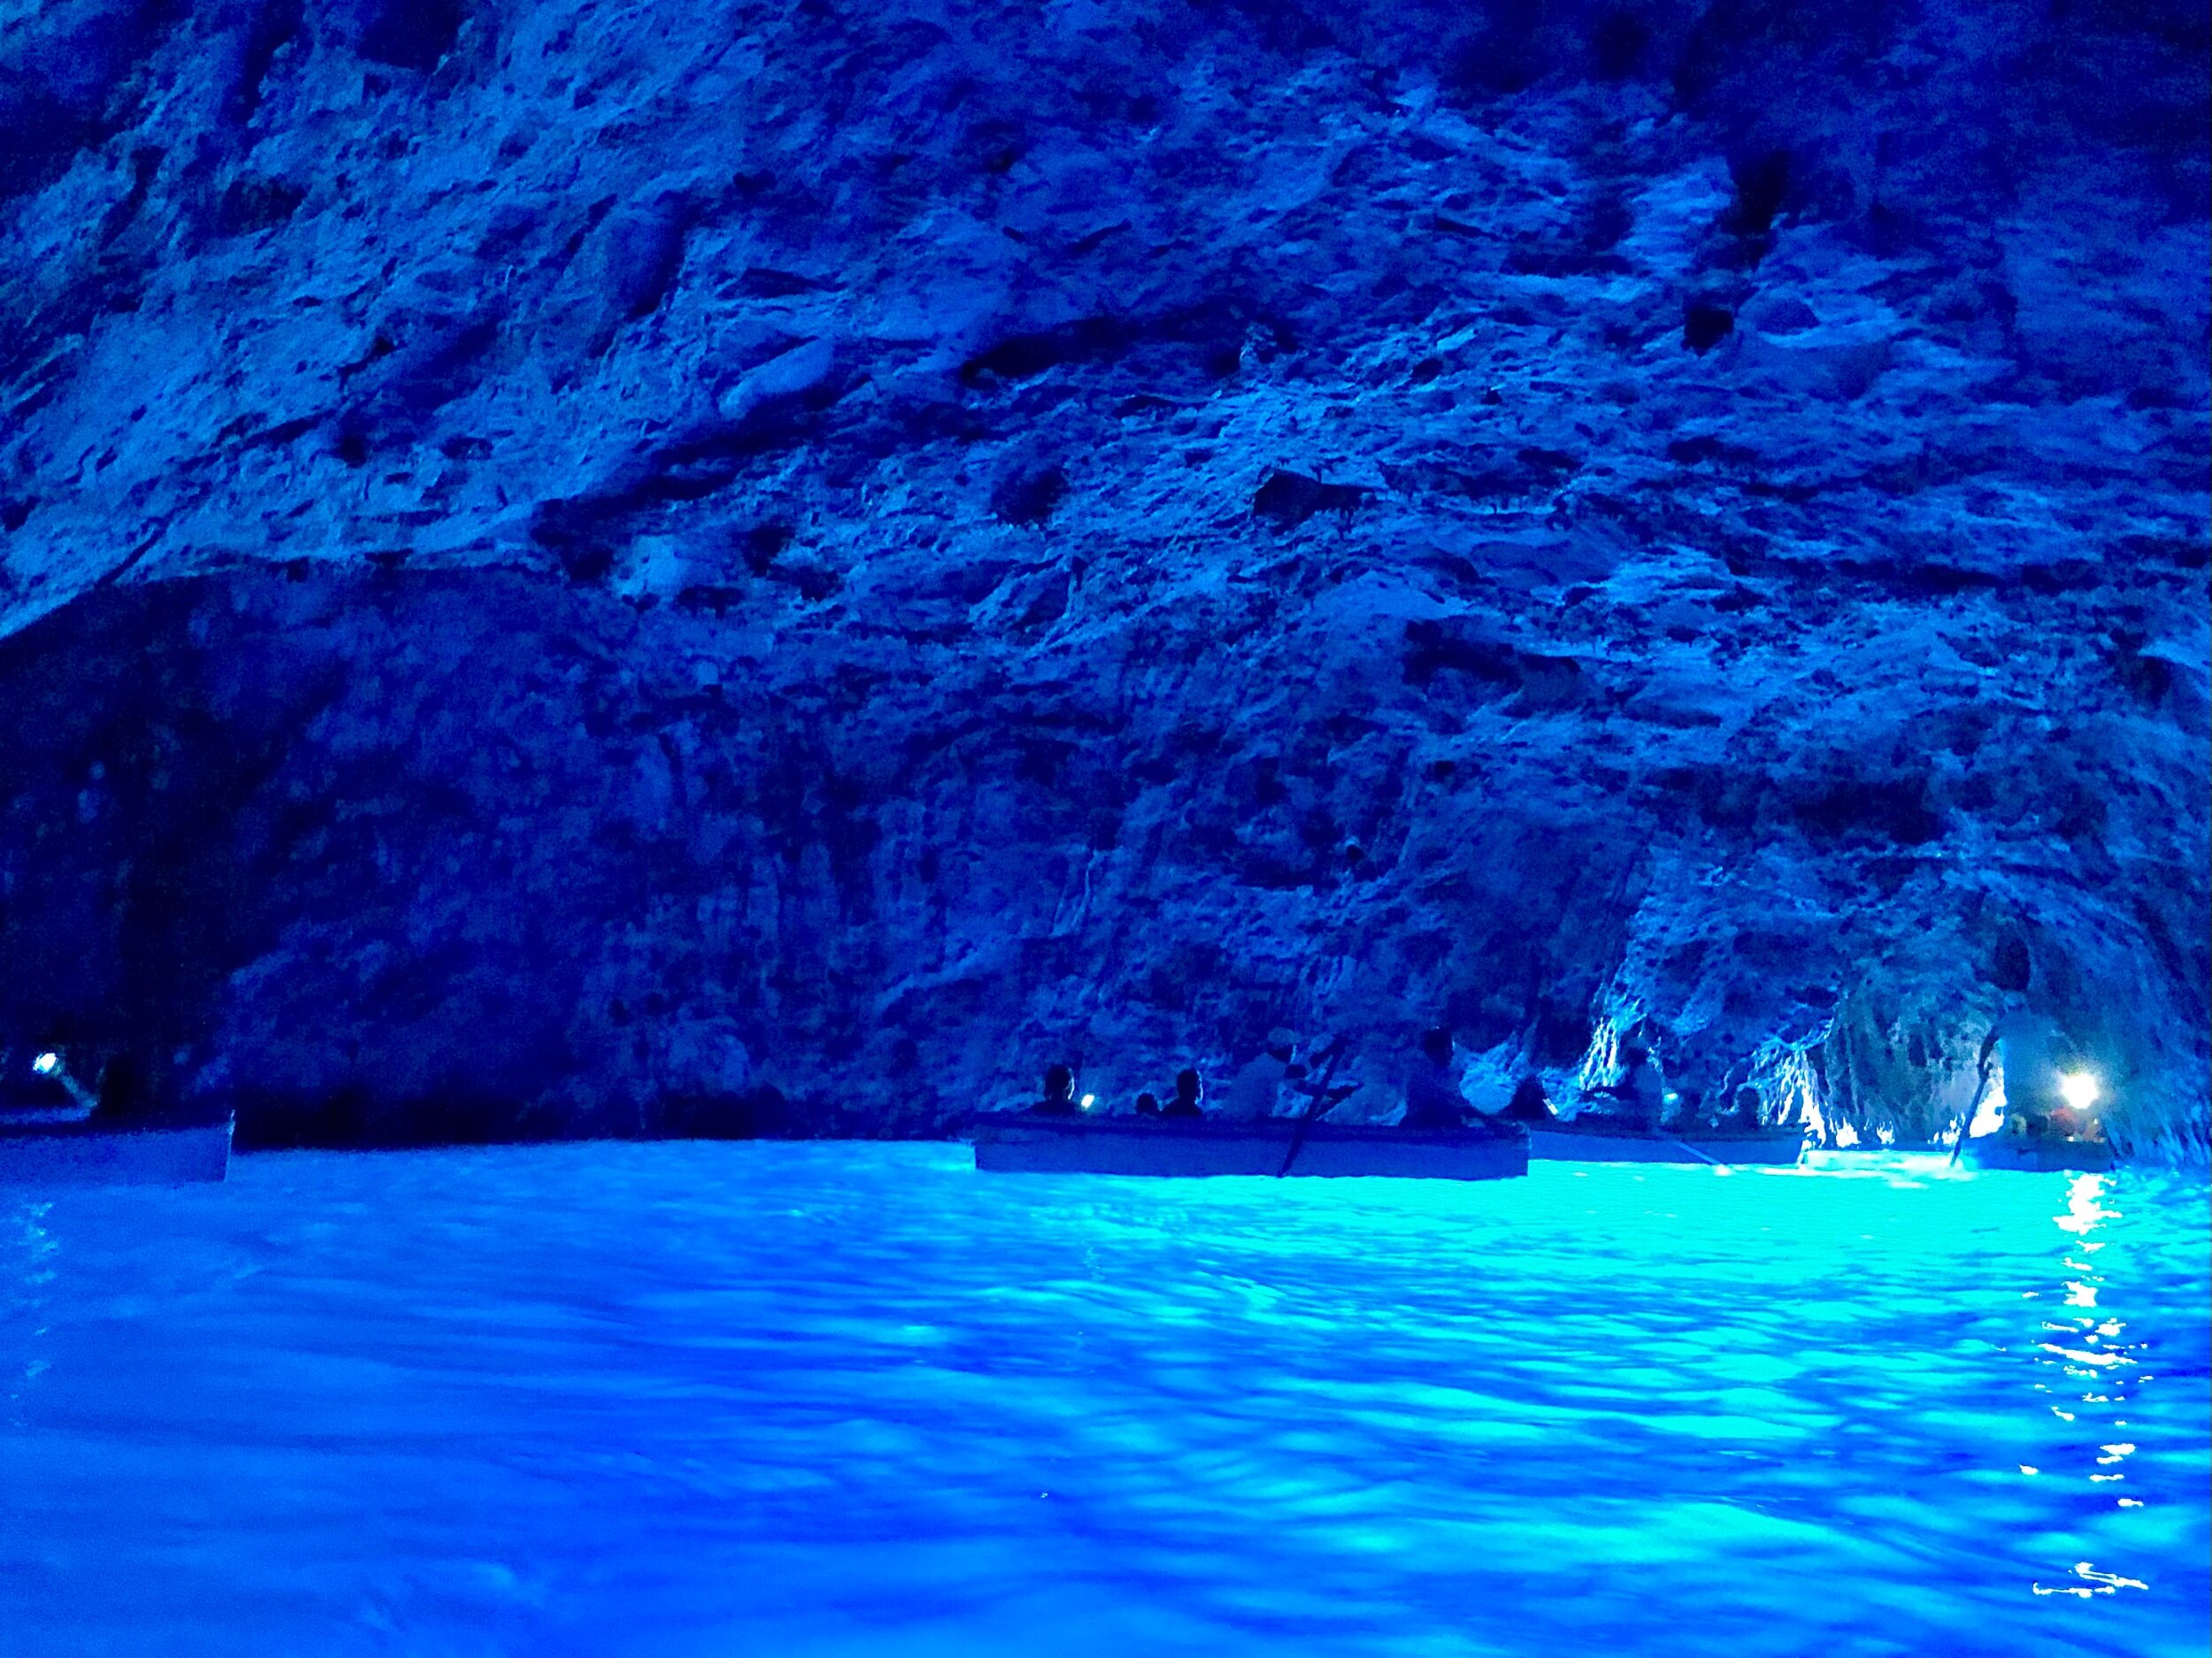 Grotta Azzurra - The Blue Grotto Capri - Capri Guide